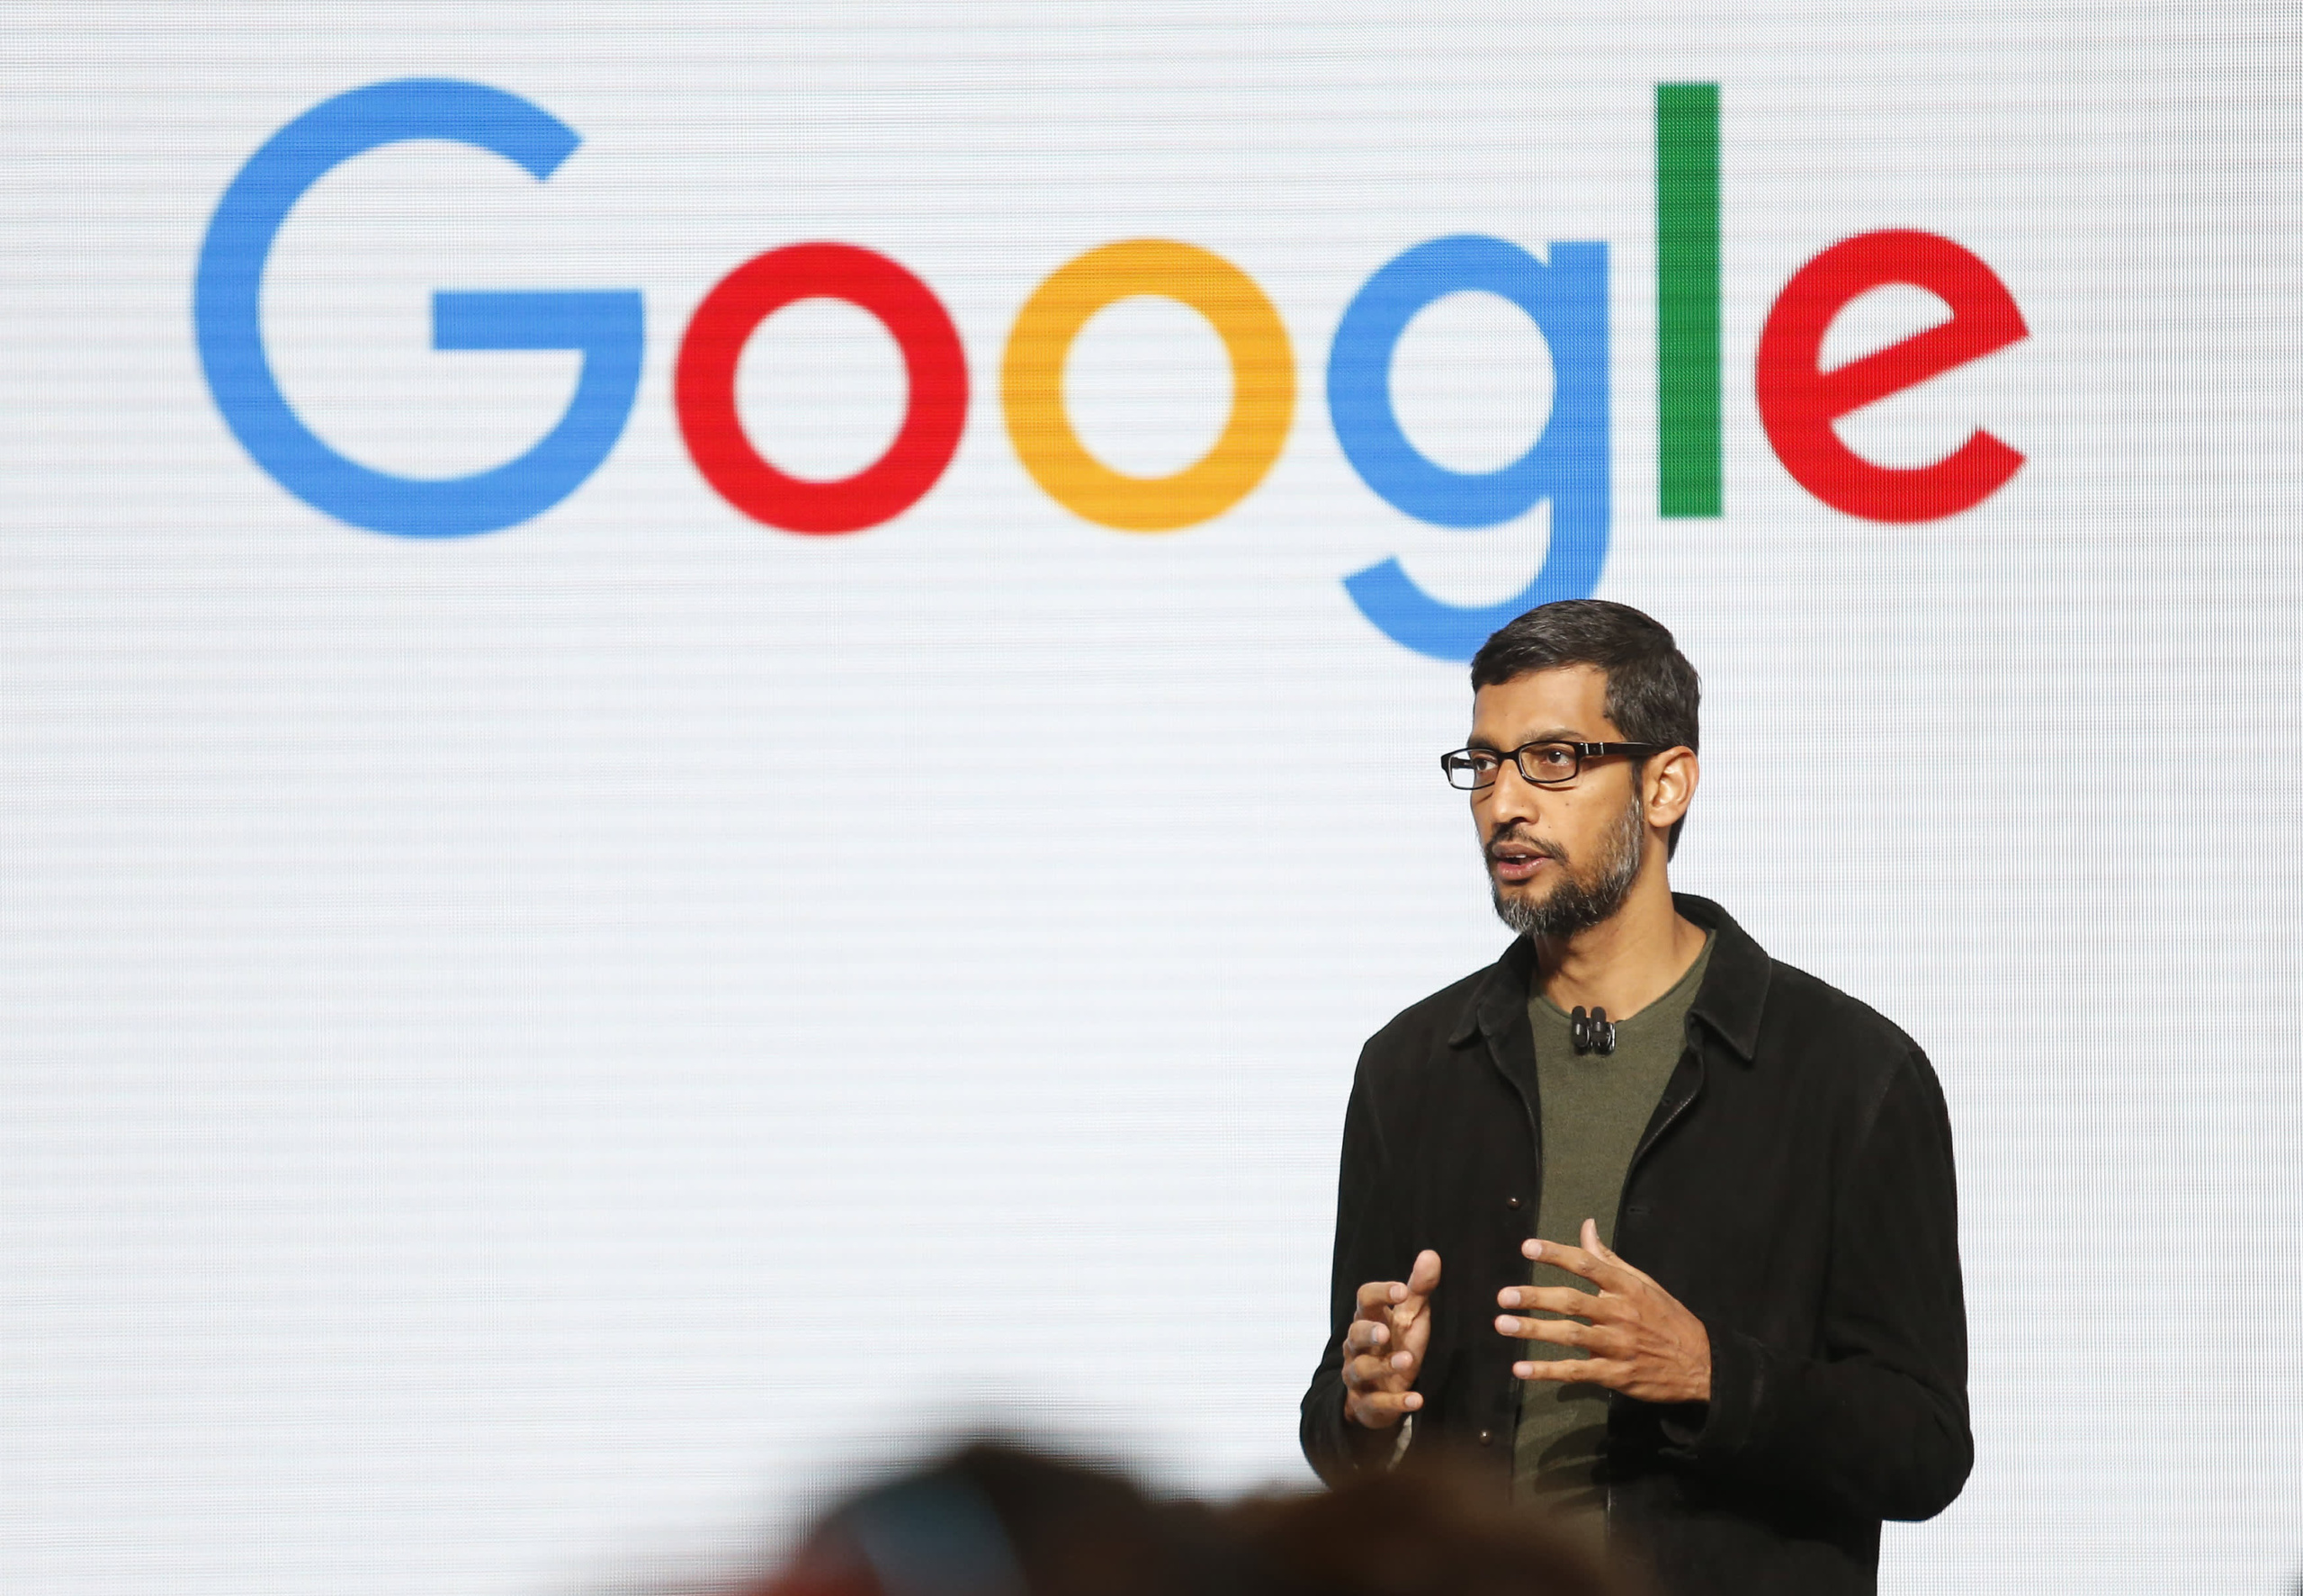 CEO Google примусив увесь колектив тестувати Bard — ШІ-технологію, яка покликана “знищити” ChatGPT. Image by Reuters